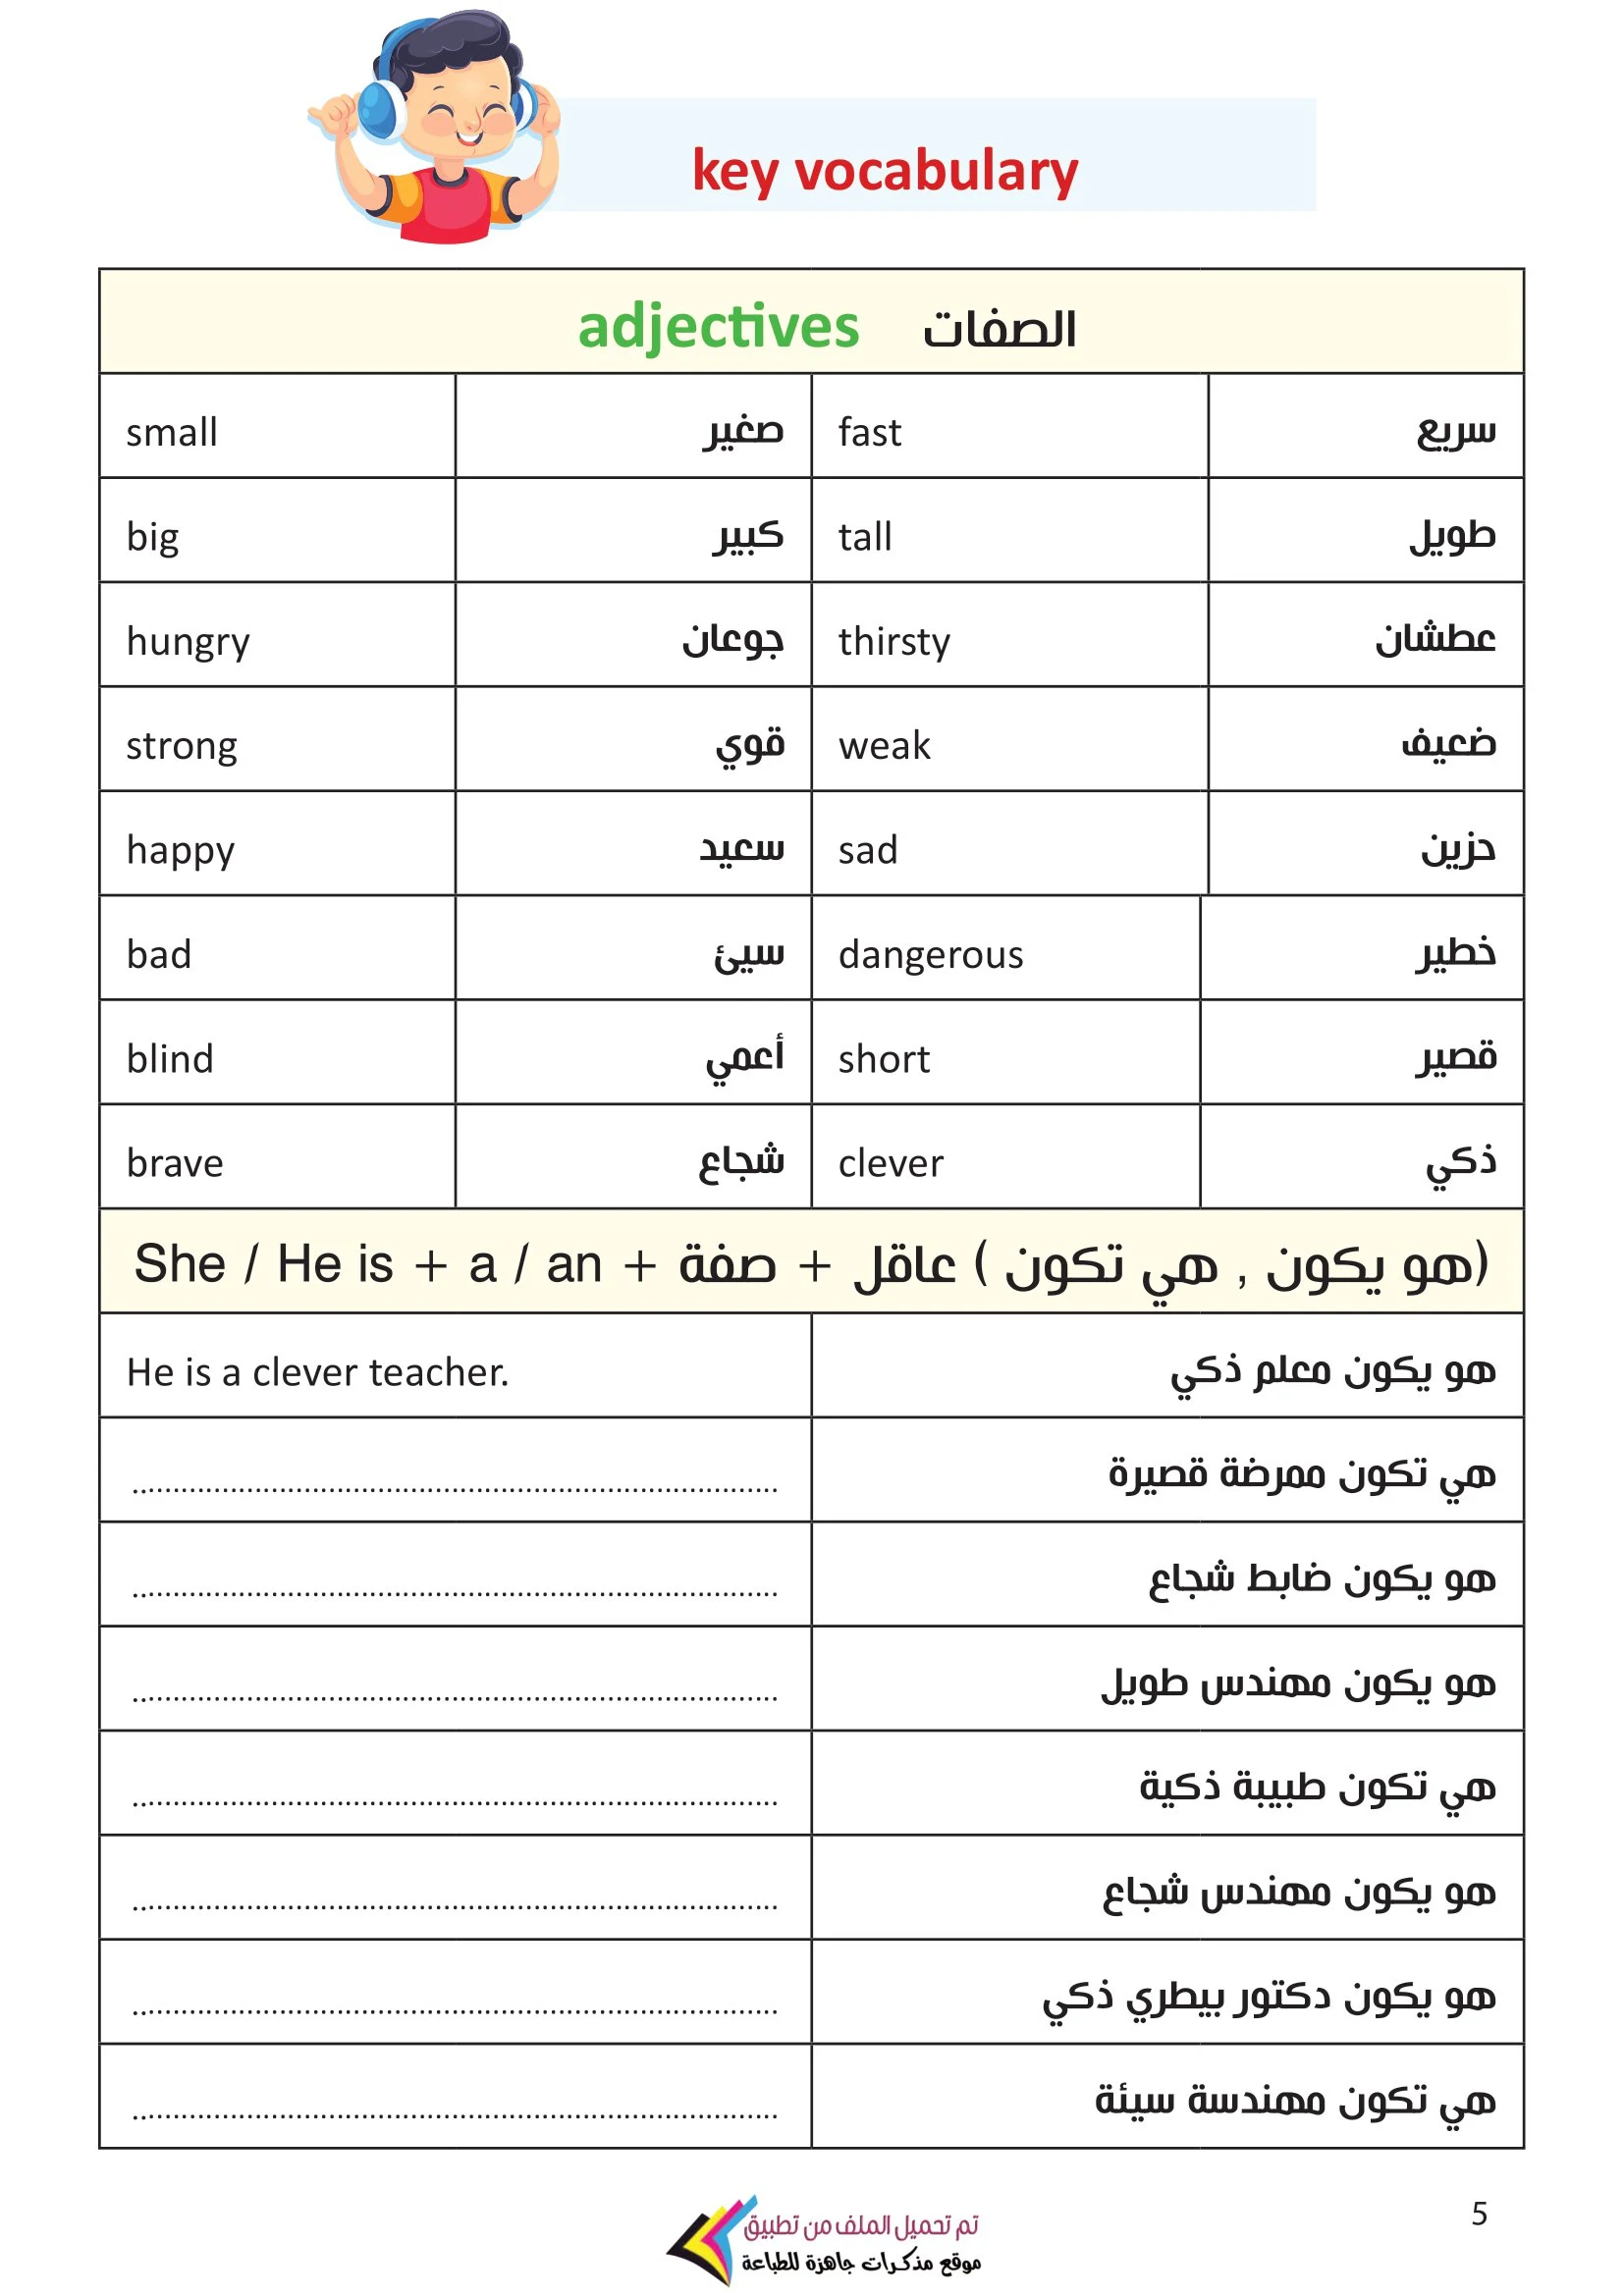 مذكرة التأسيس والترجمة الفورية إنجليزي الصف الأول الابتدائي pdf تحميل مباشر مجاني